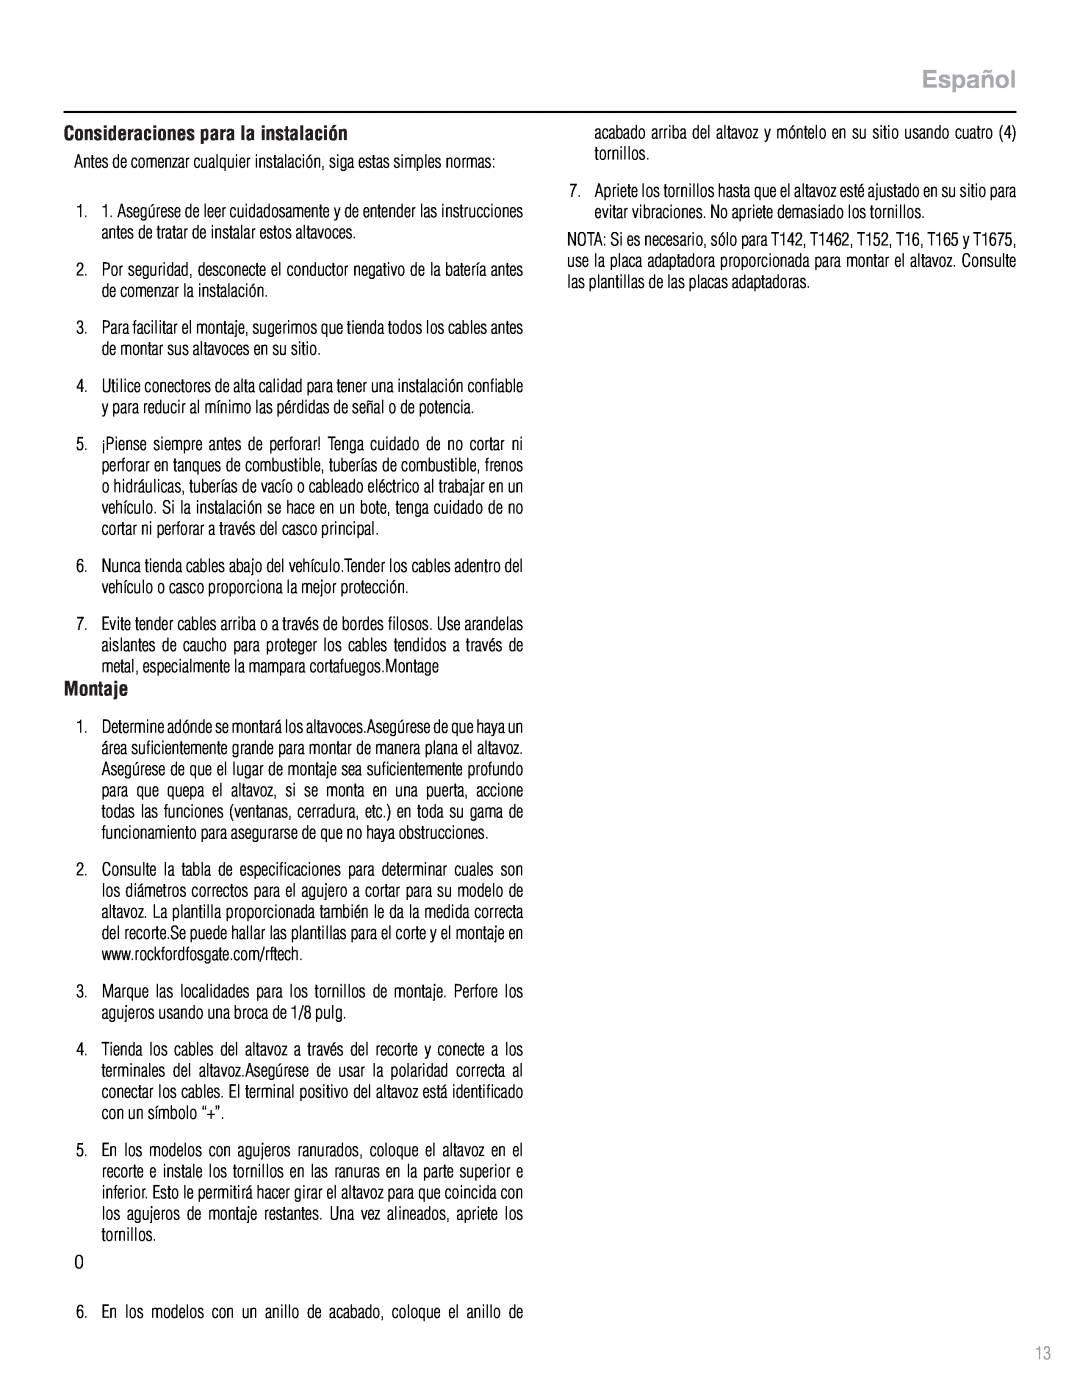 Rockford Fosgate T1693 manual Español, Consideraciones para la instalación, Montaje 